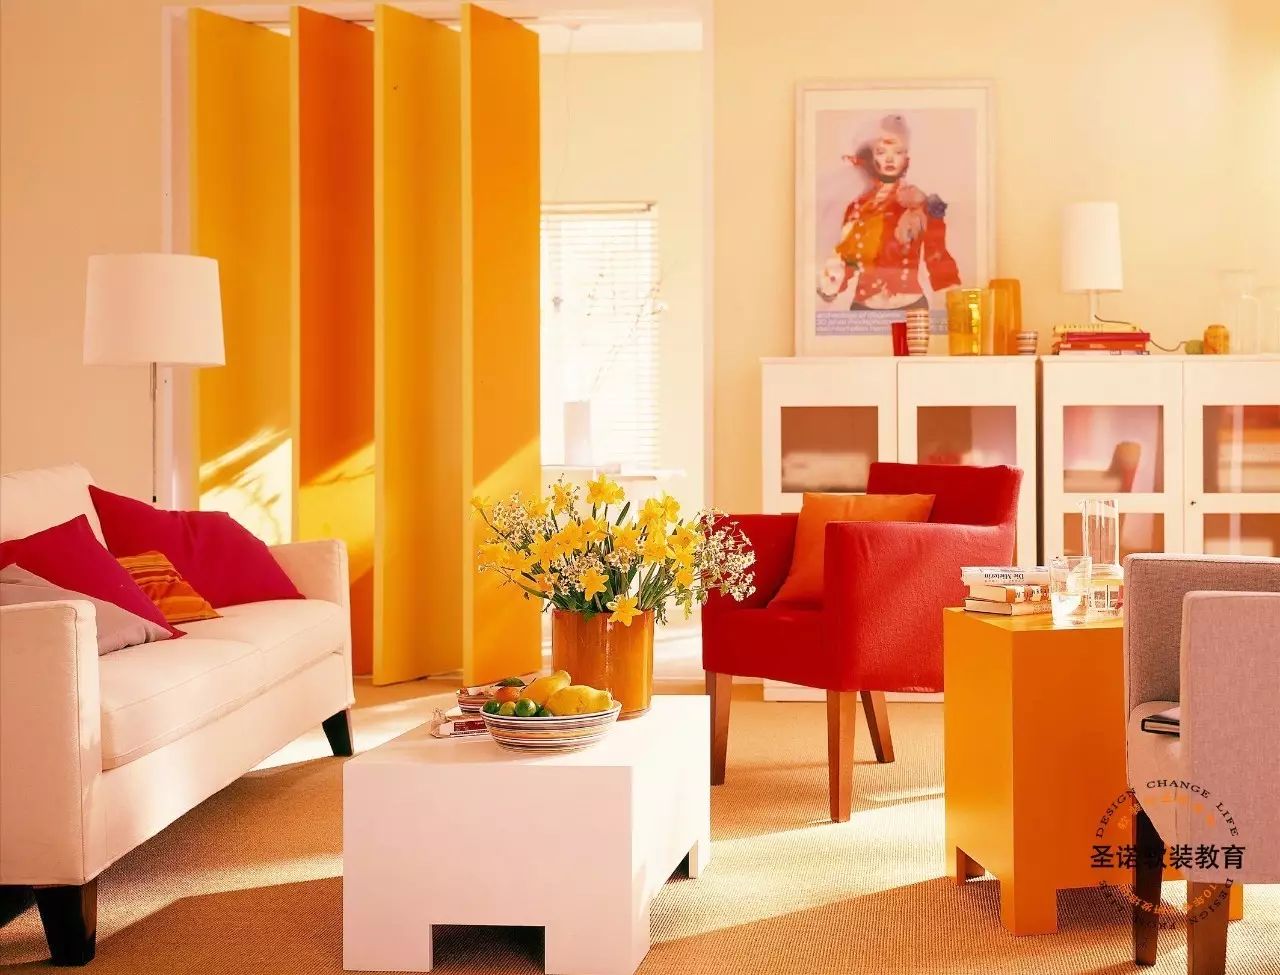 橙色:橙色让人潜意识里联想到太阳光,所以在橙色的房间里,会给人带来